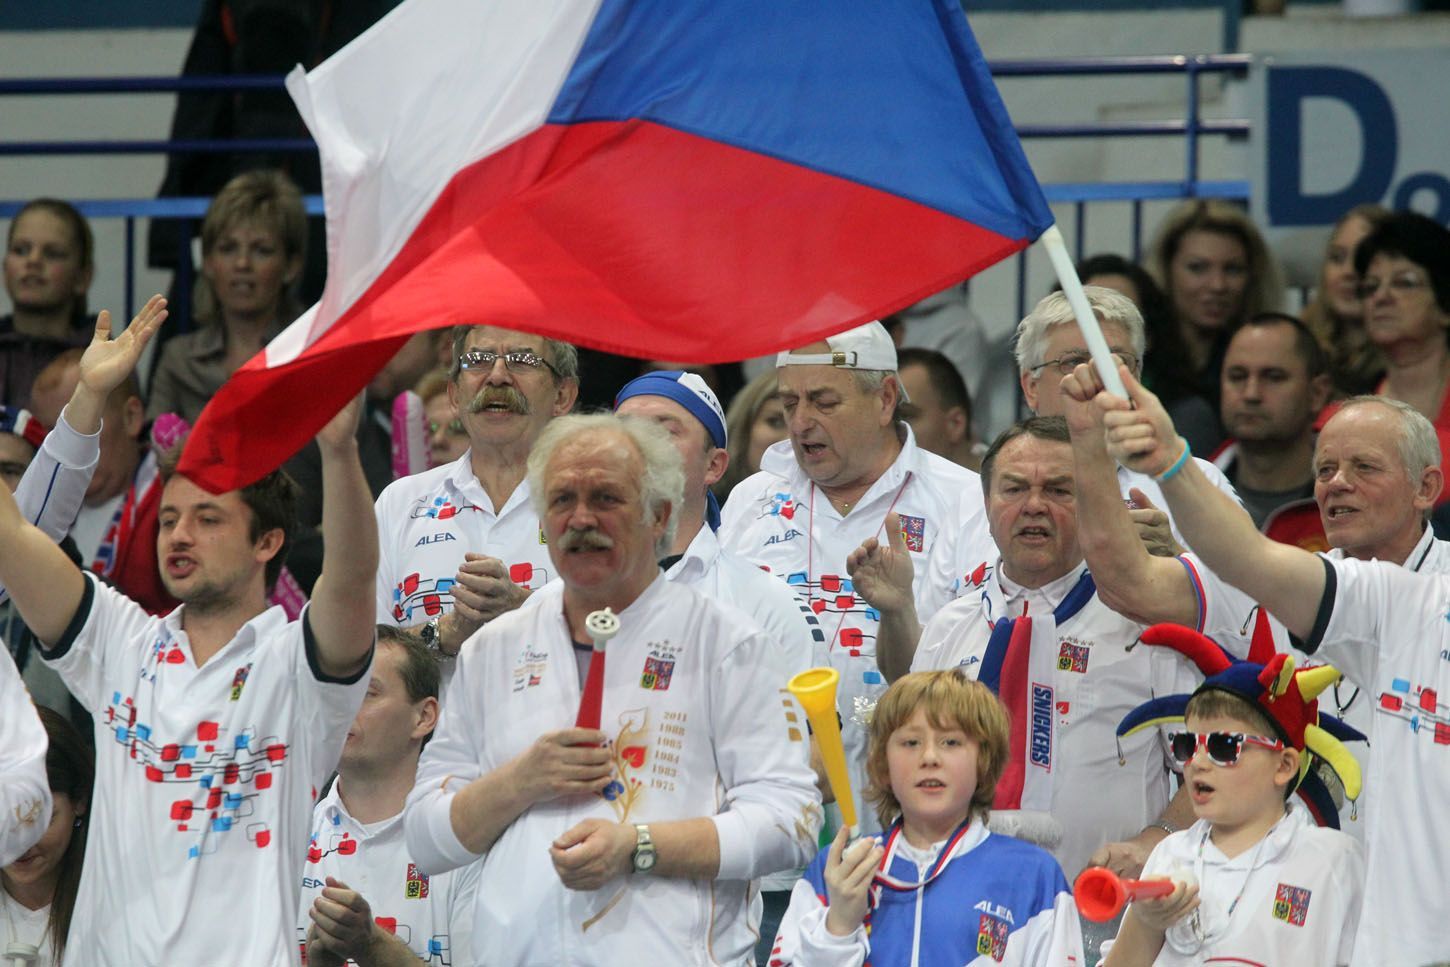 Fed Cup, Česko - Austrálie: čeští fanoušci